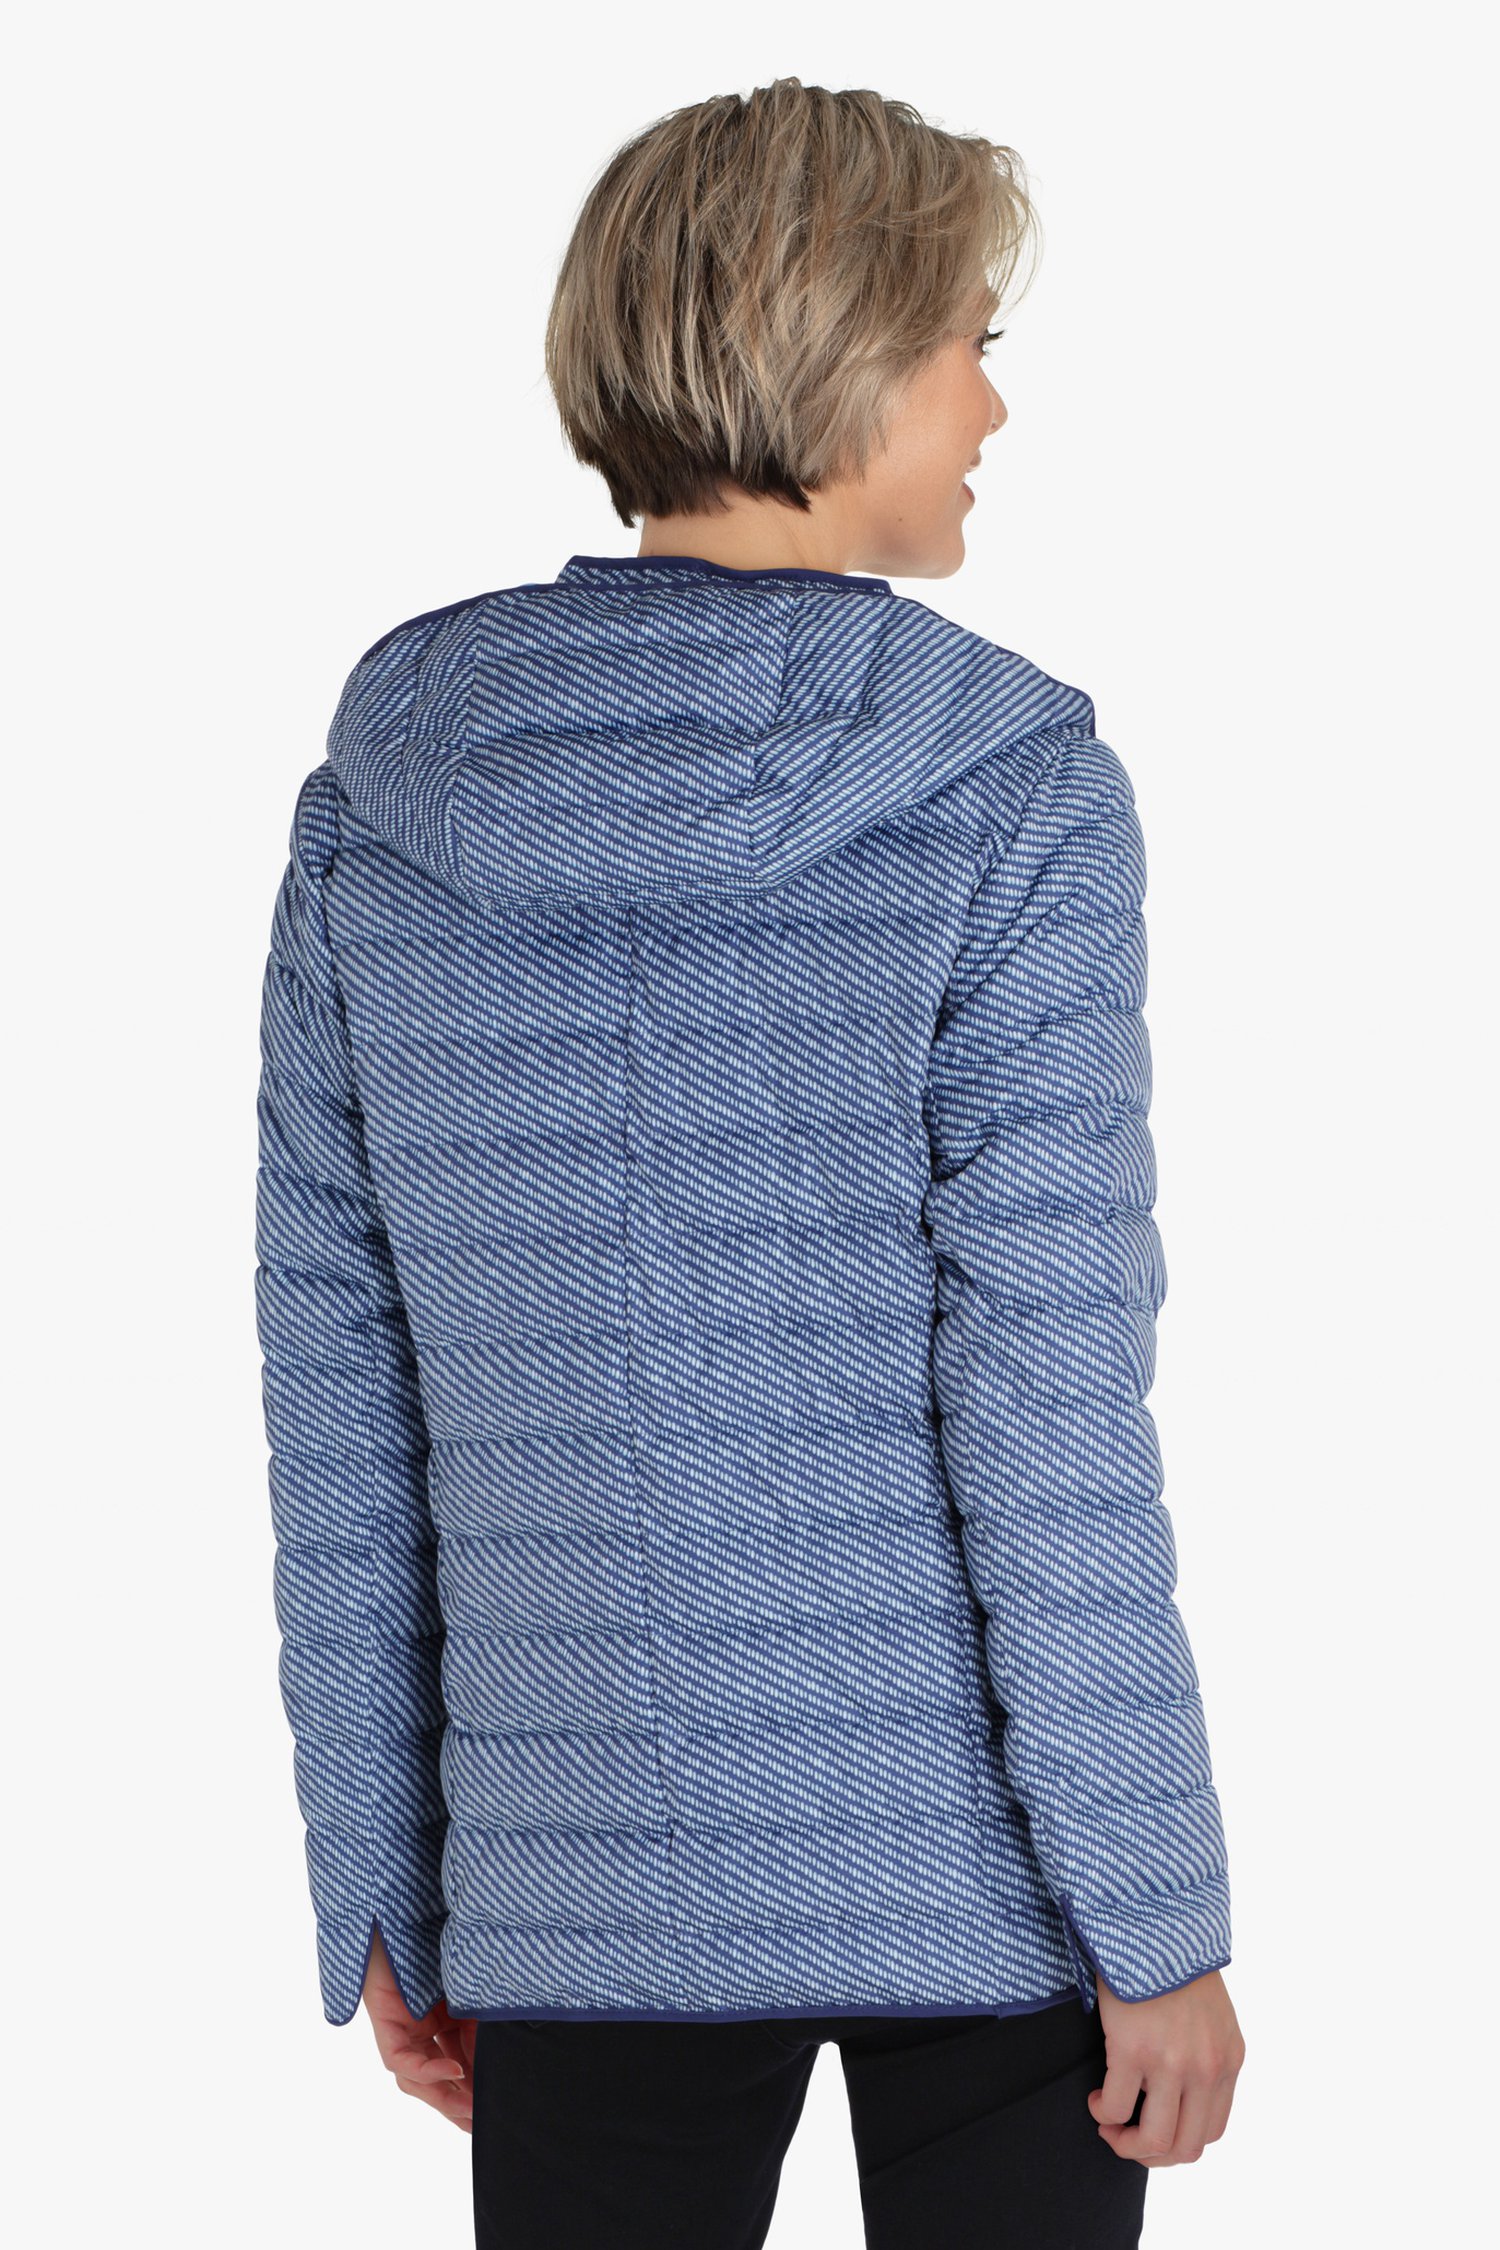 Imperméable matelassé bleu à capuche amovible de Claude Arielle pour Femmes